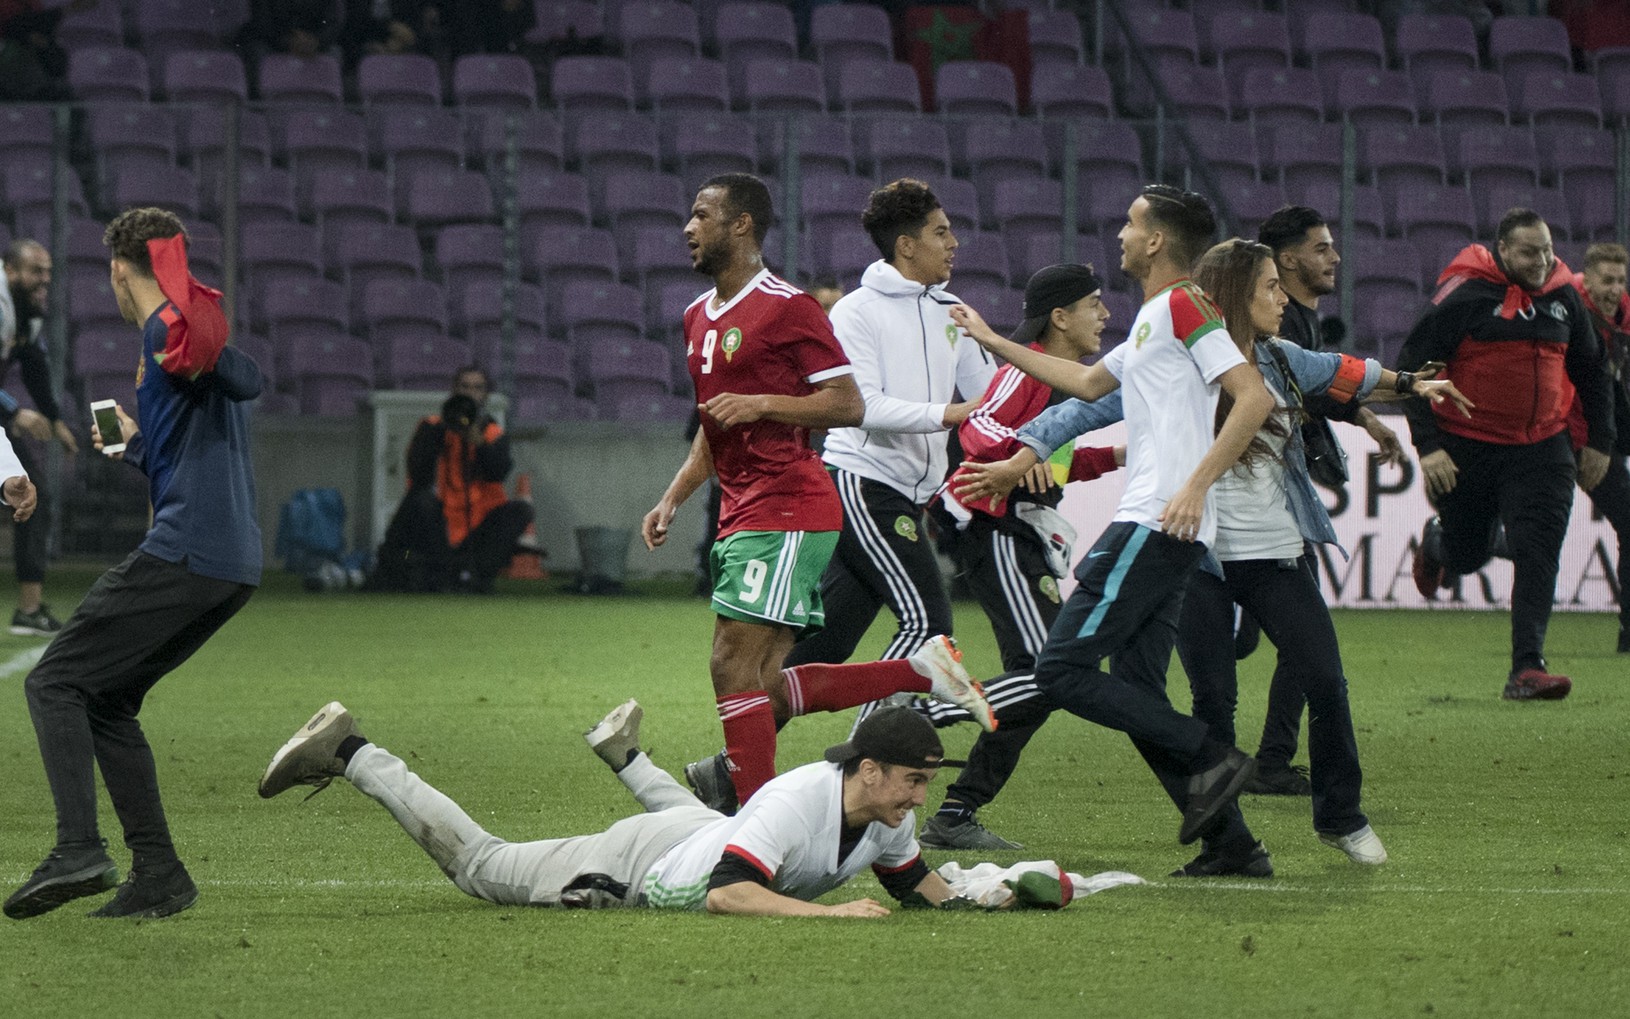 Marockí fanúšikovia po záverečnom